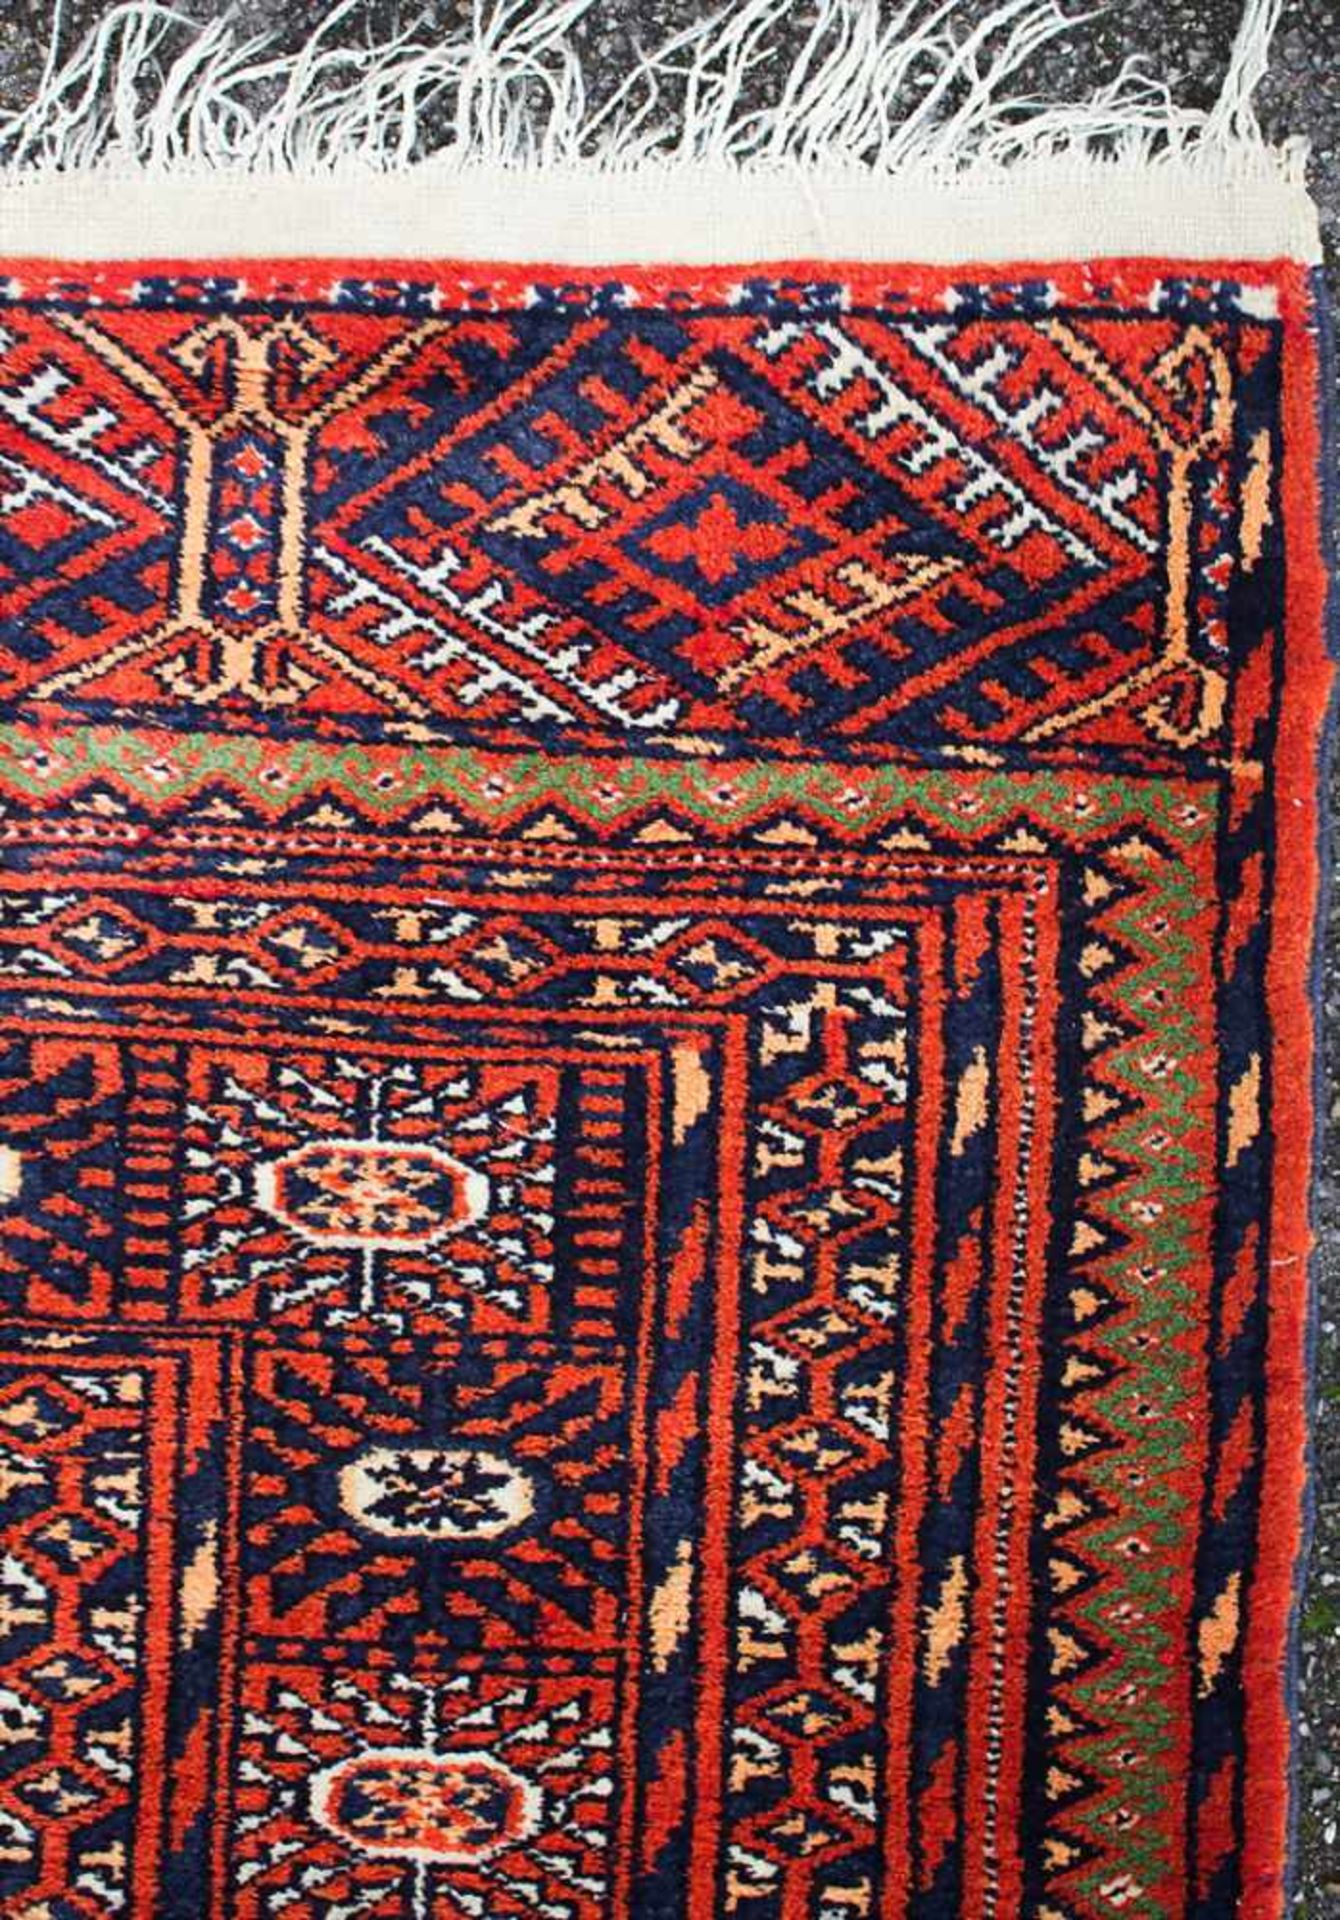 Orientteppich / An oriental carpetMaterial: Wolle auf Baumwolle, Maße: 256 x 160 cm, Zustand: - Image 5 of 5